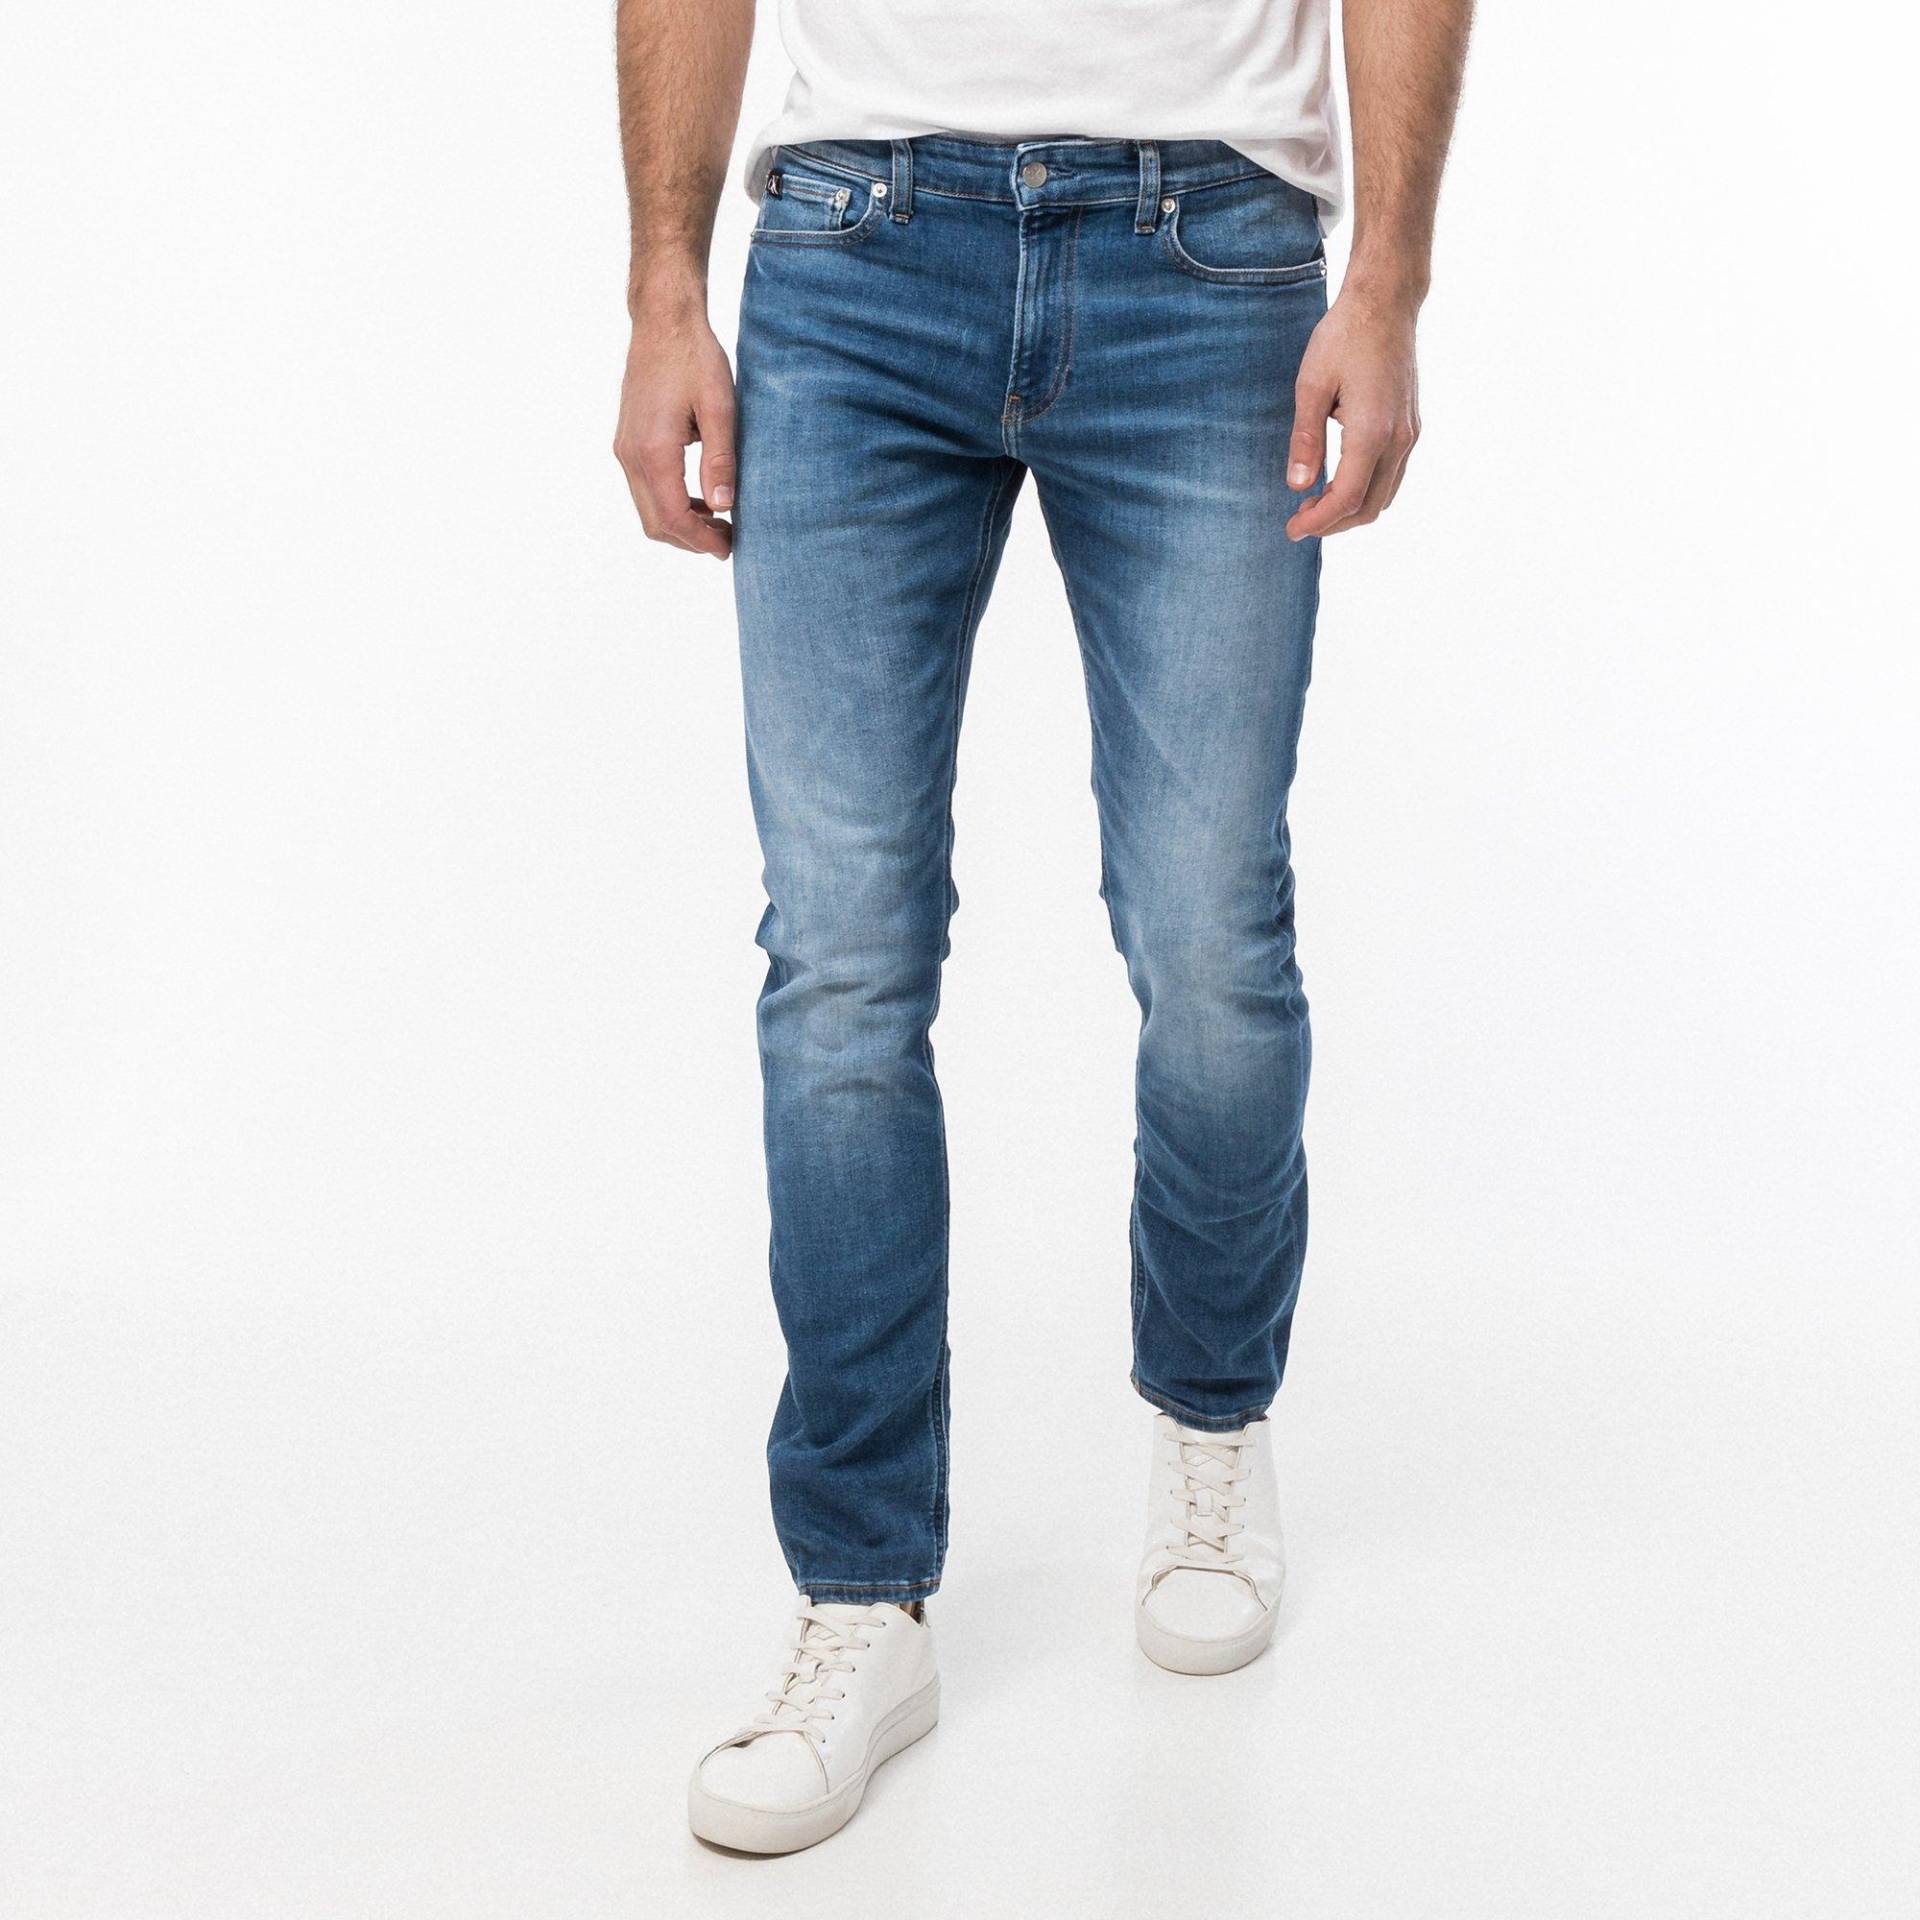 Jeans, Slim Fit Herren Blau L34/W32 von Calvin Klein Jeans